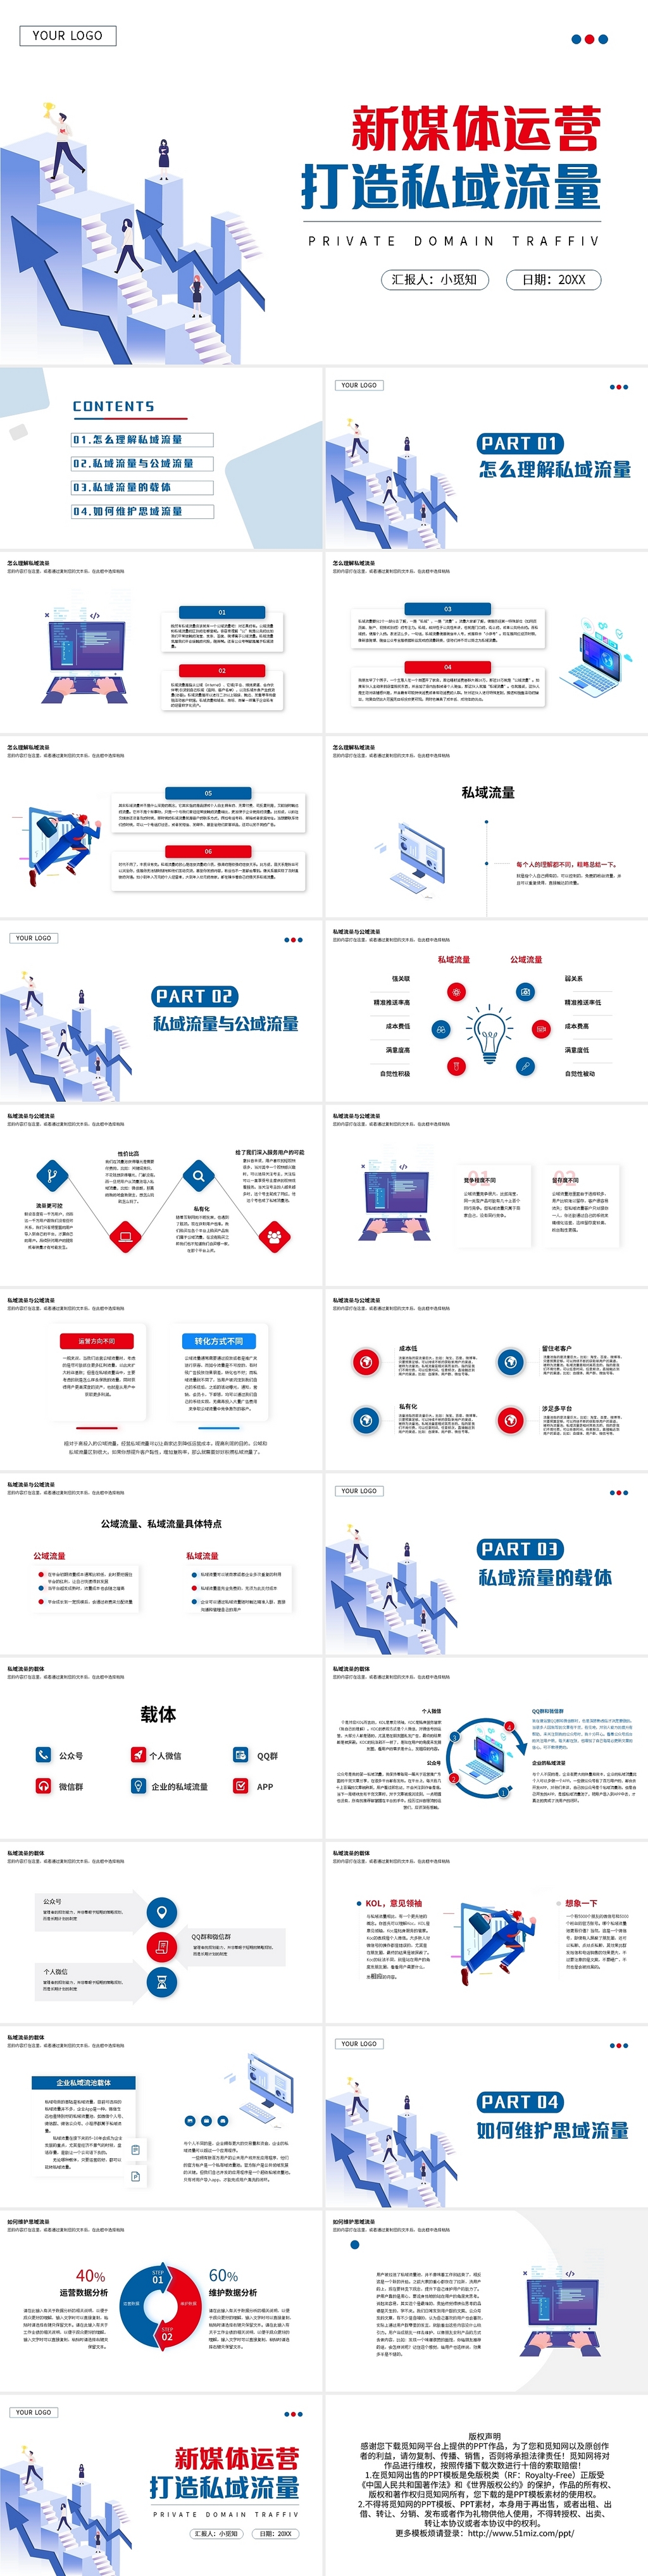 红蓝简约新媒体运营私域流量PPT模板宣传PPT动态PPT